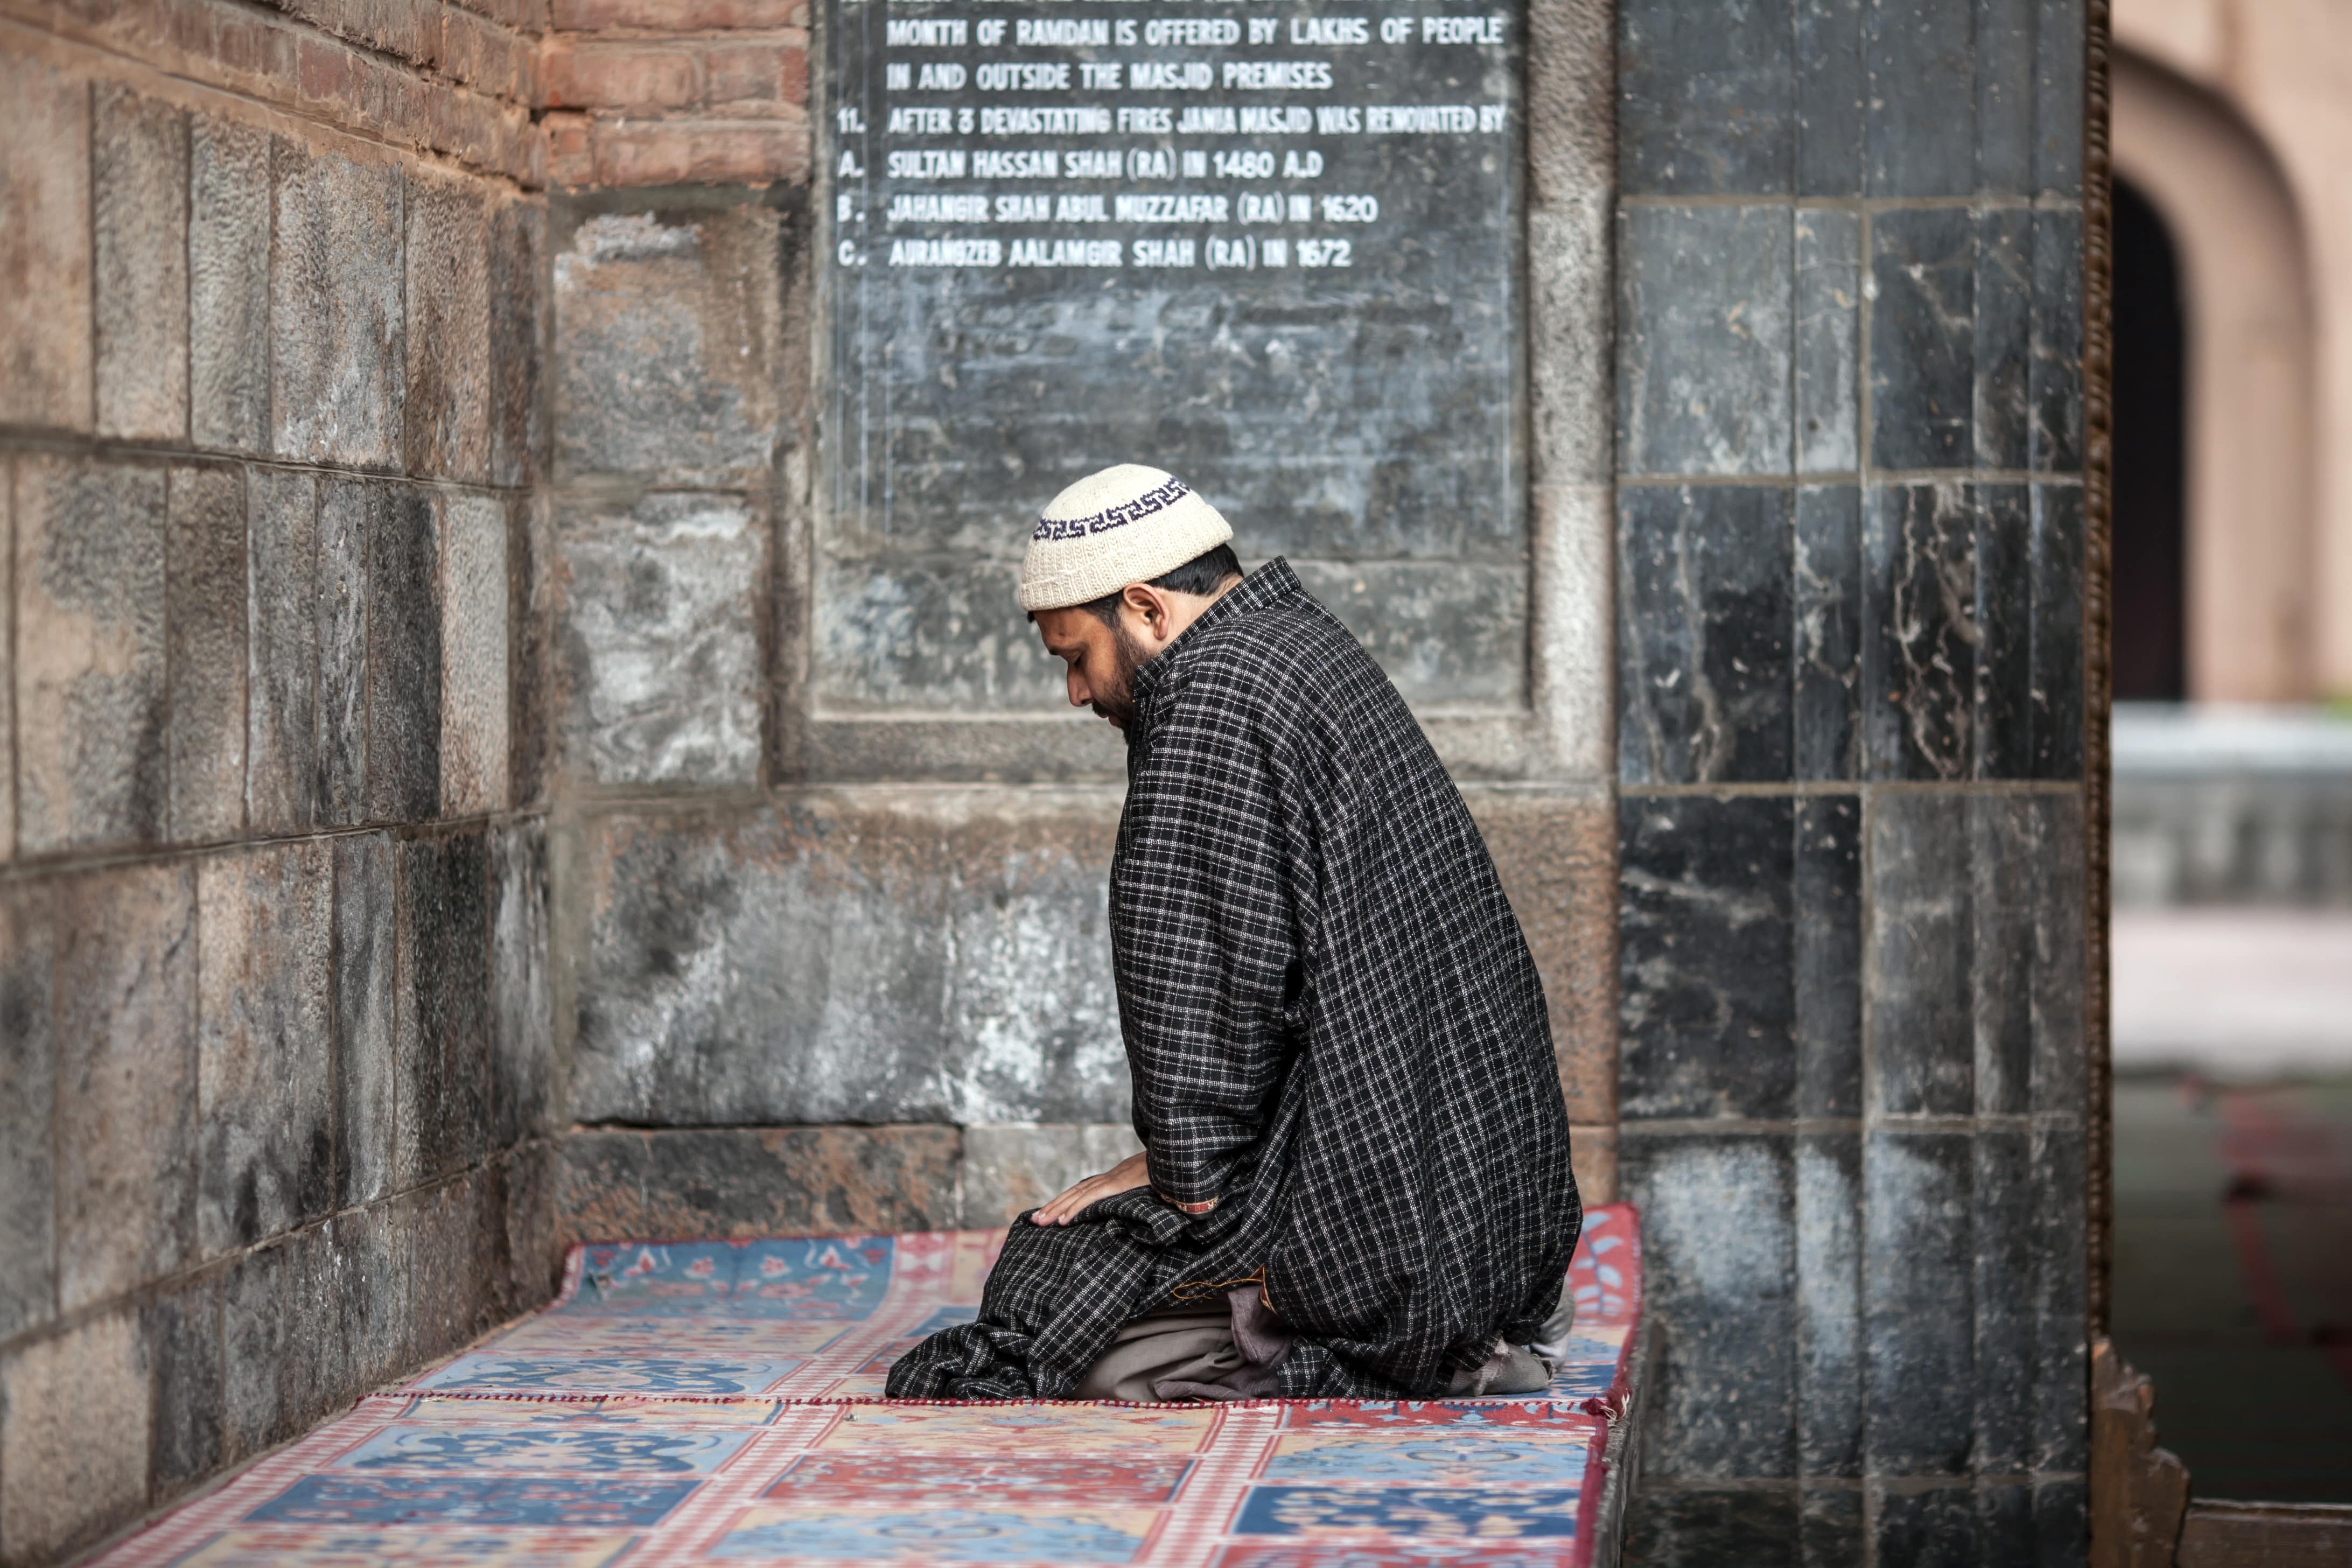 Celebraciones religiosas en confinamiento: rezar y practicar de maneras inusuales